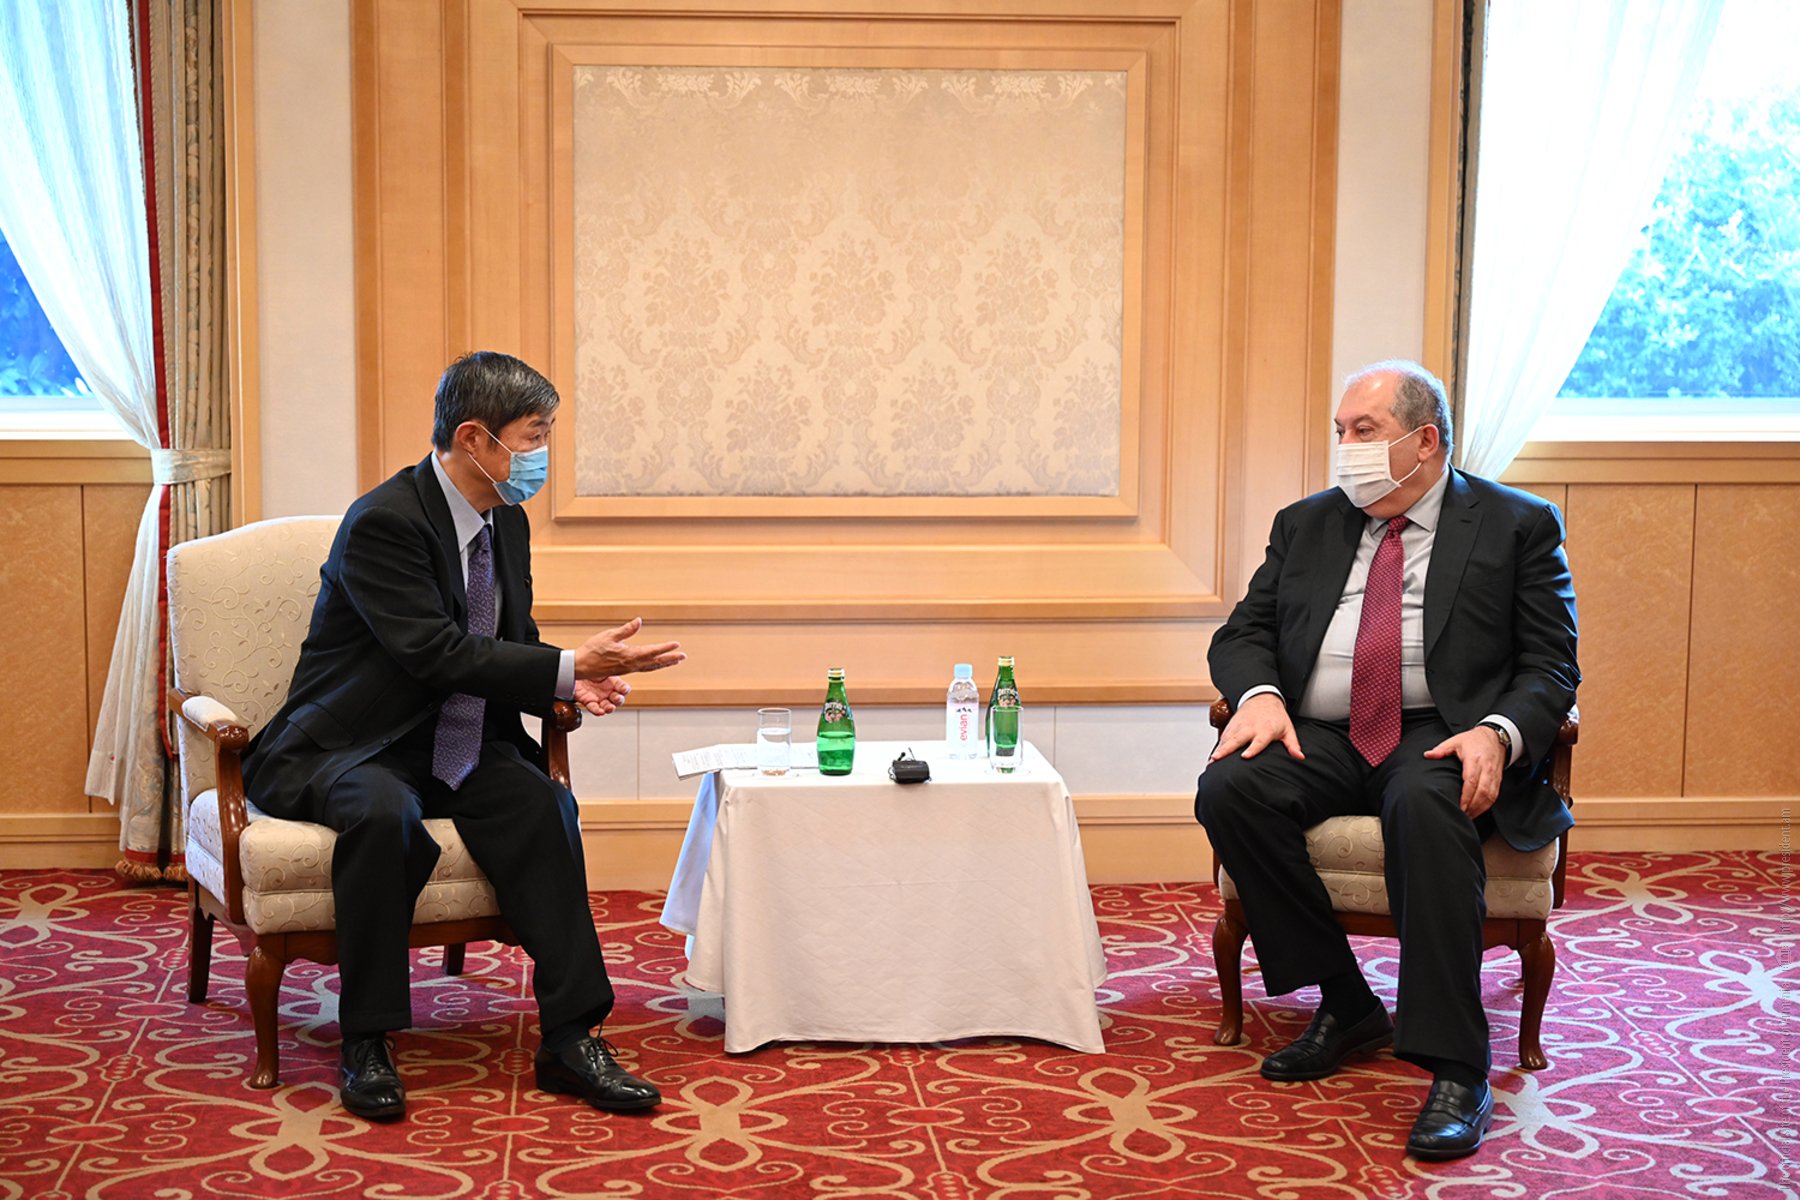 ՀՀ նախագահ Արմեն Սարգսյանը հանդիպել է Ճապոնիայի միջազգային համագործակցության գործակալության նախագահի հետ